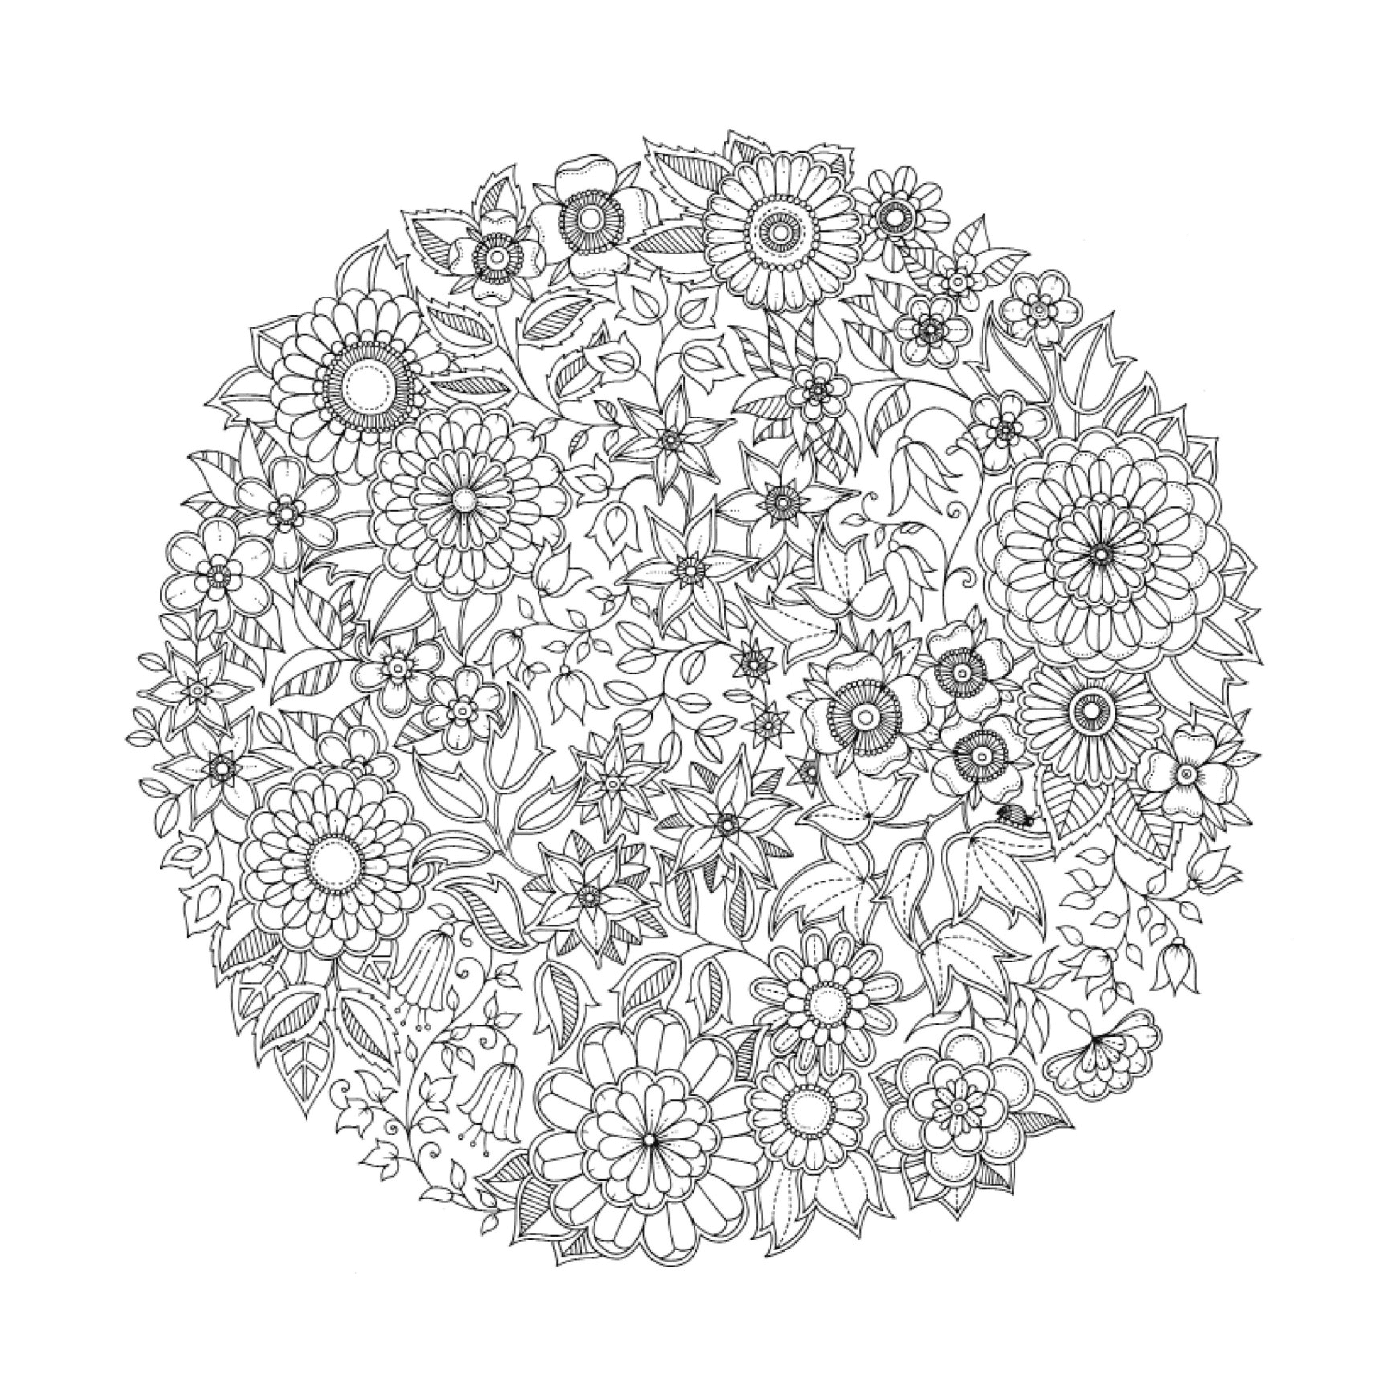  Kreisförmiges Modell der Blumen in schwarz und weiß 